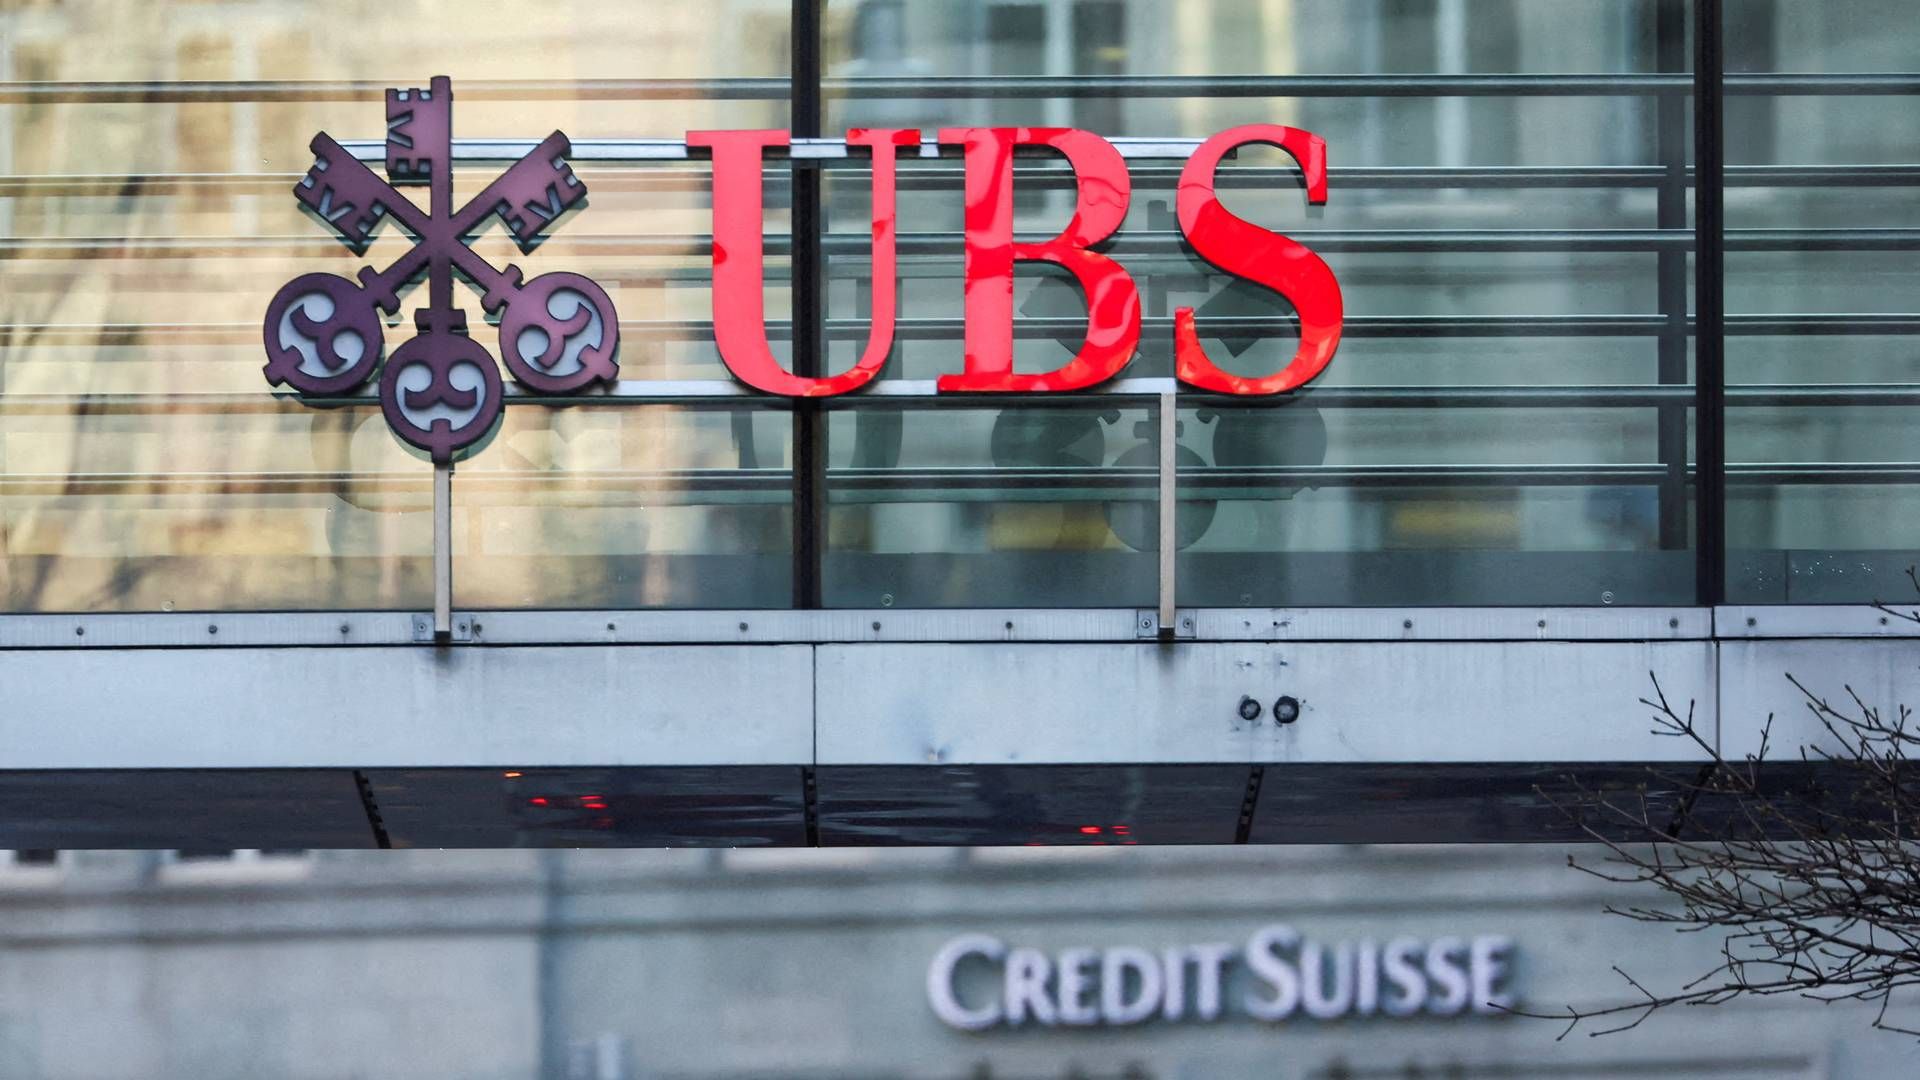 UBS har kjøpt opp Credit Suisse og leverer rekordresultat - vil si opp 3000 ansatte fremover. | Foto: Denis Balibouse